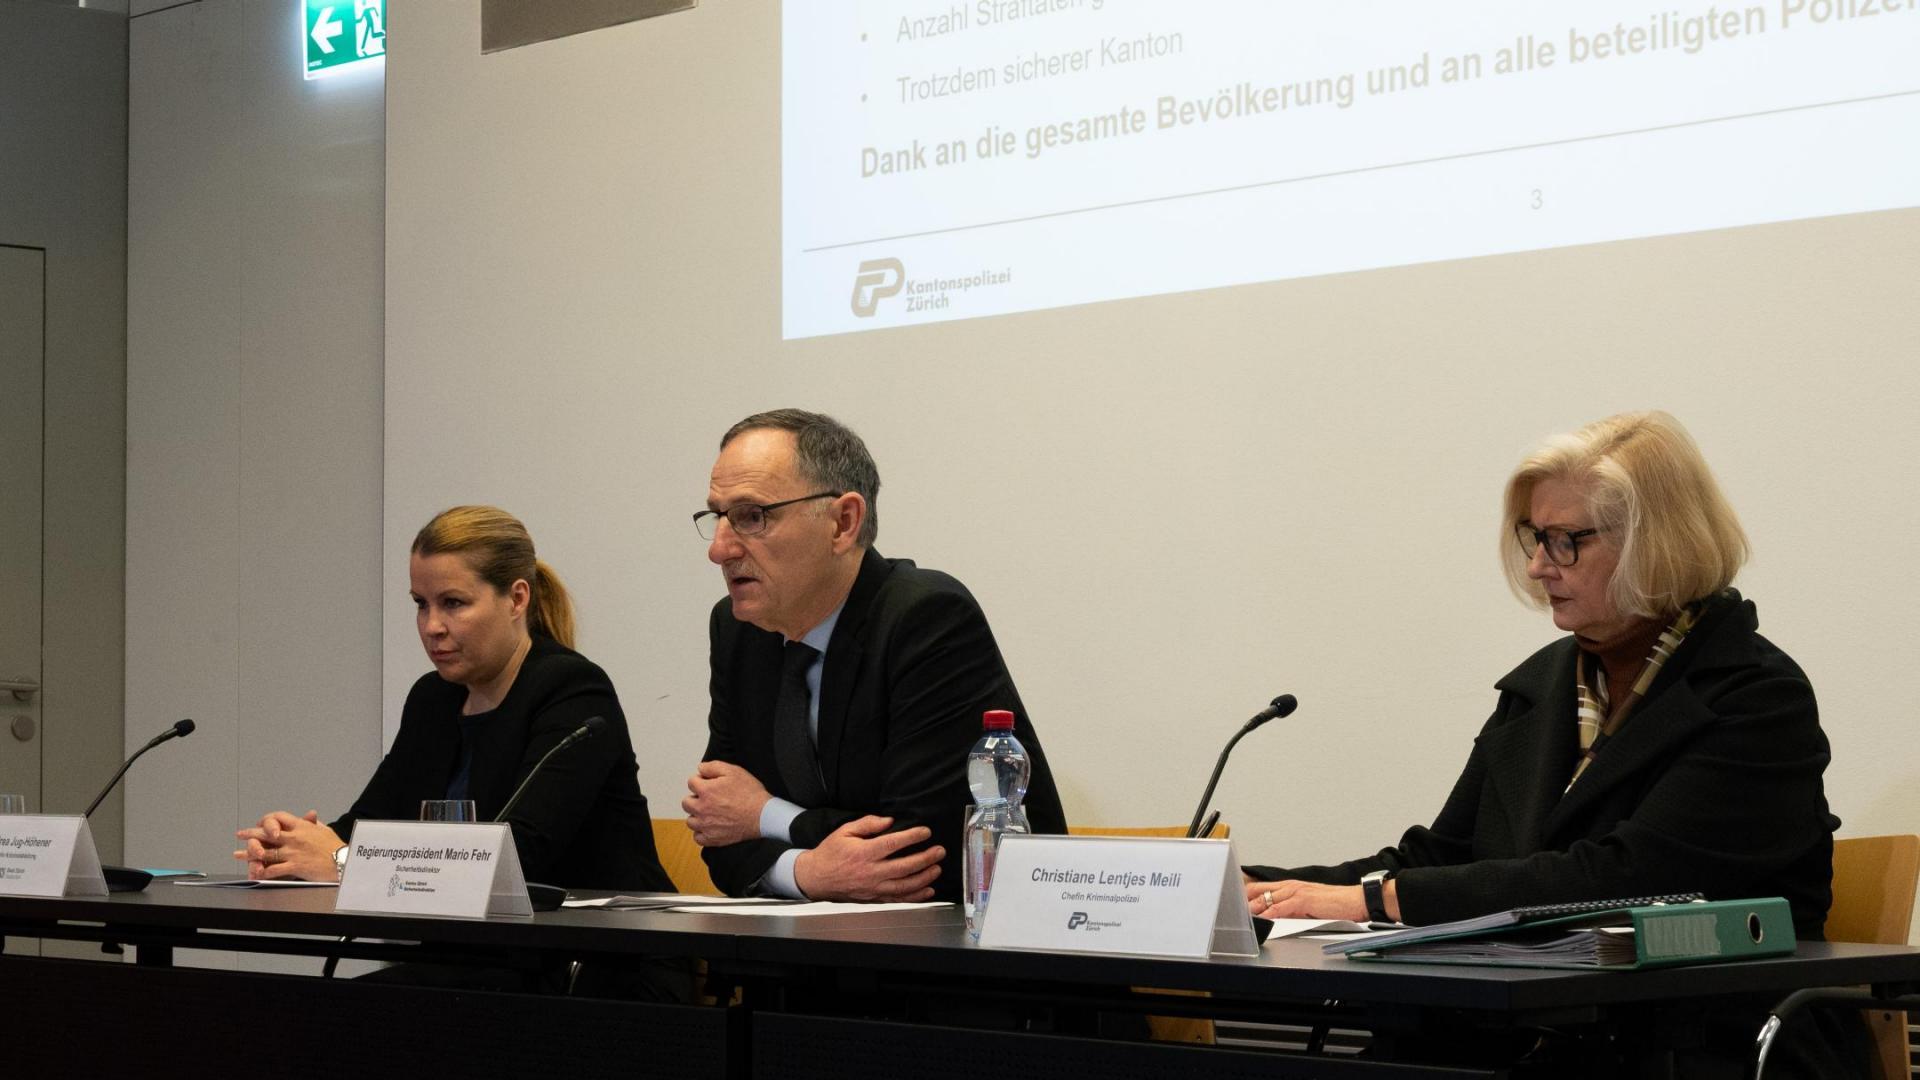 Regierungsrat Mario Fehr sowie Vertreterinnen der Kantons- und Stadtpolizei Zürich präsentieren die Kriminalstatistik für das Jahr 2023